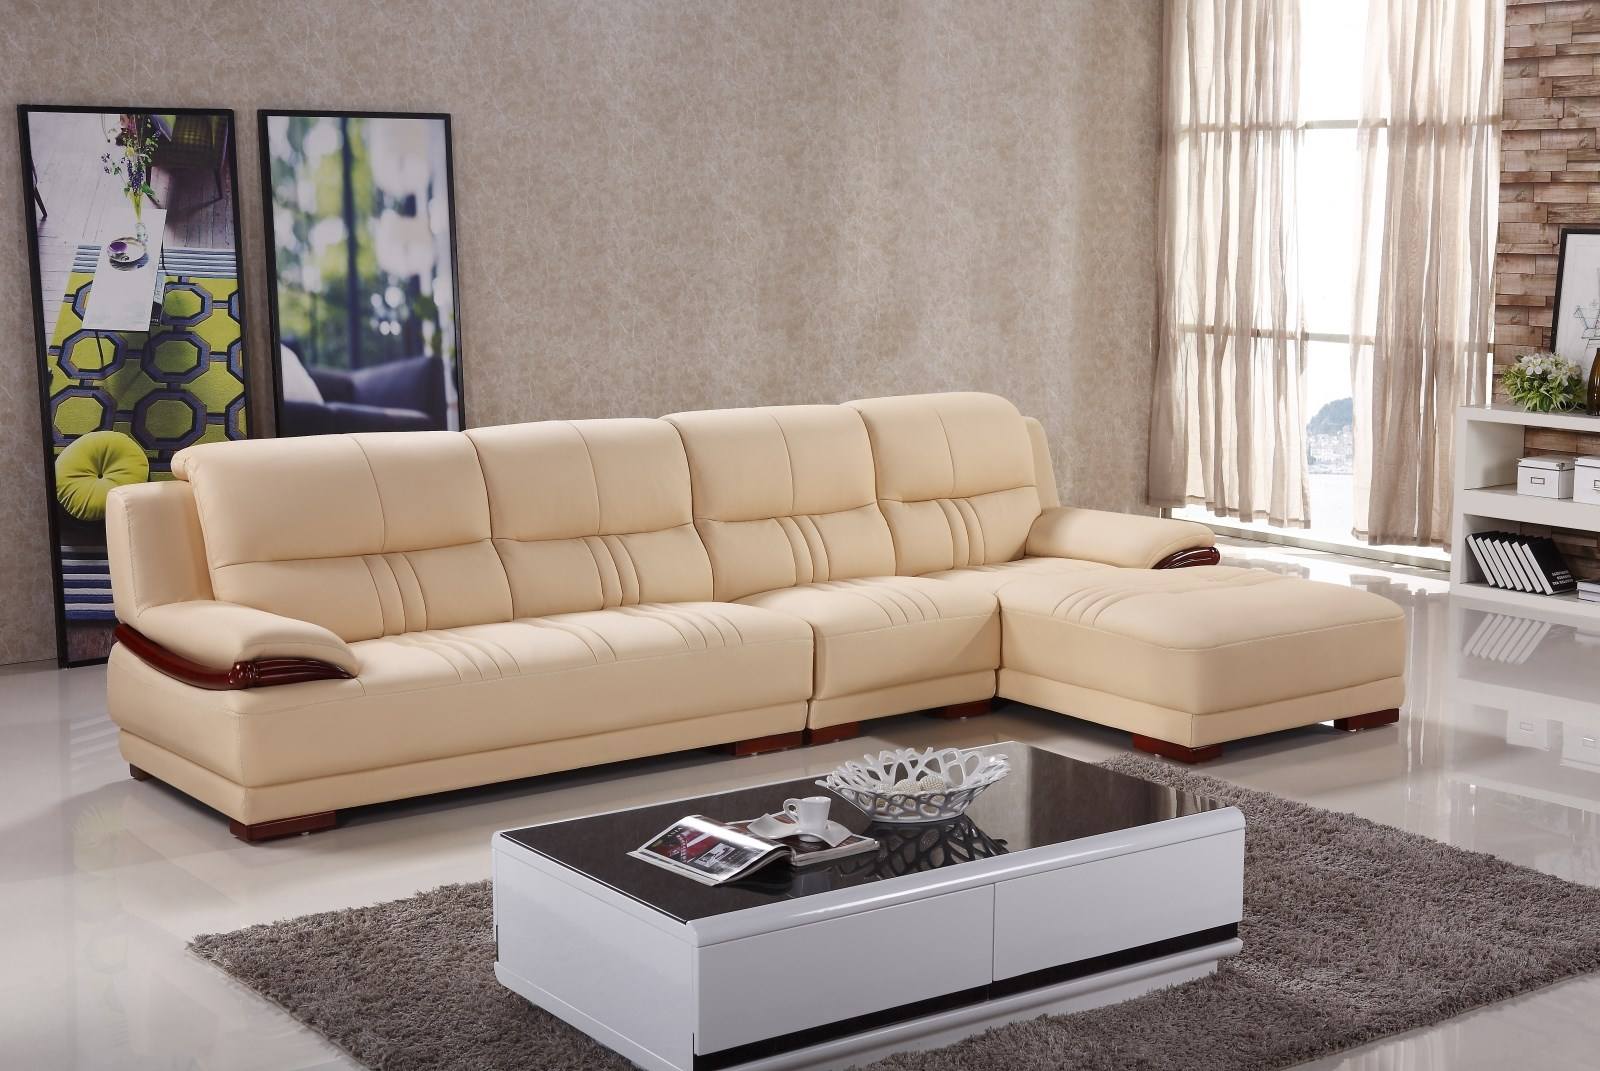 36米长的客厅放多长沙发合适?沙发的常规尺寸有哪些?